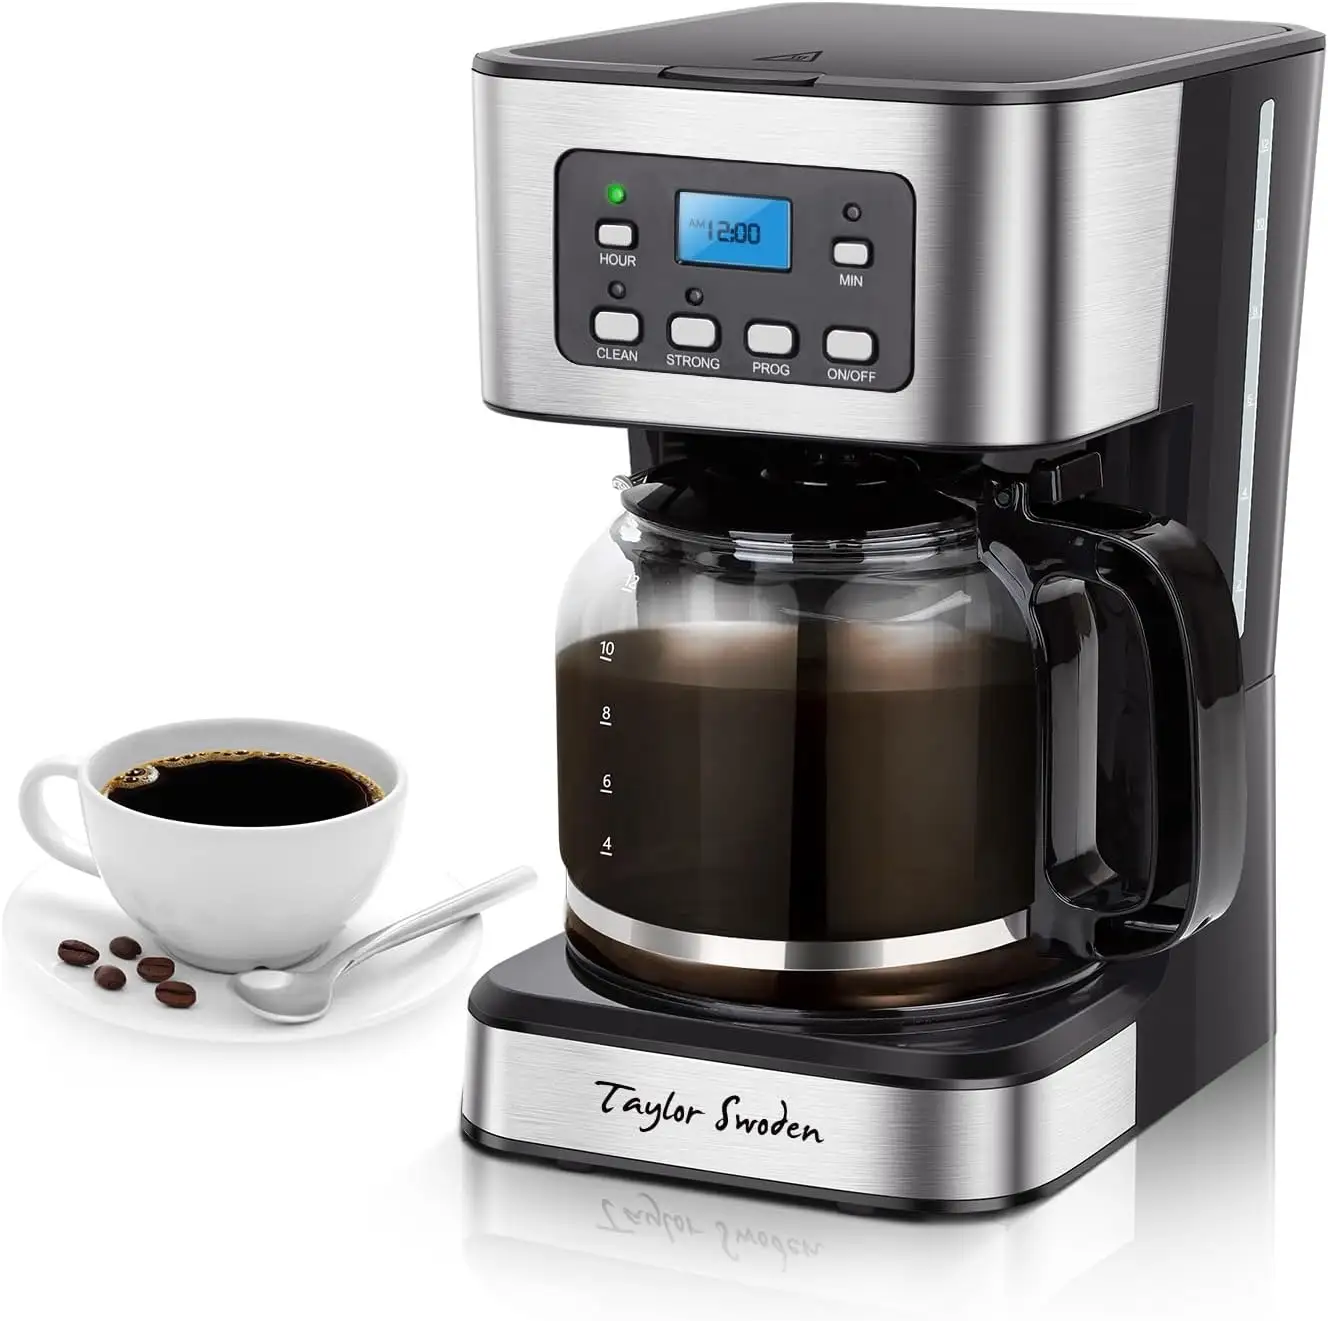 12-Cup programlanabilir kahve makinesi, ev ve ofis için güçlü demlemek damla kahve makinesi, cam sürahi, duraklama ve hizmet